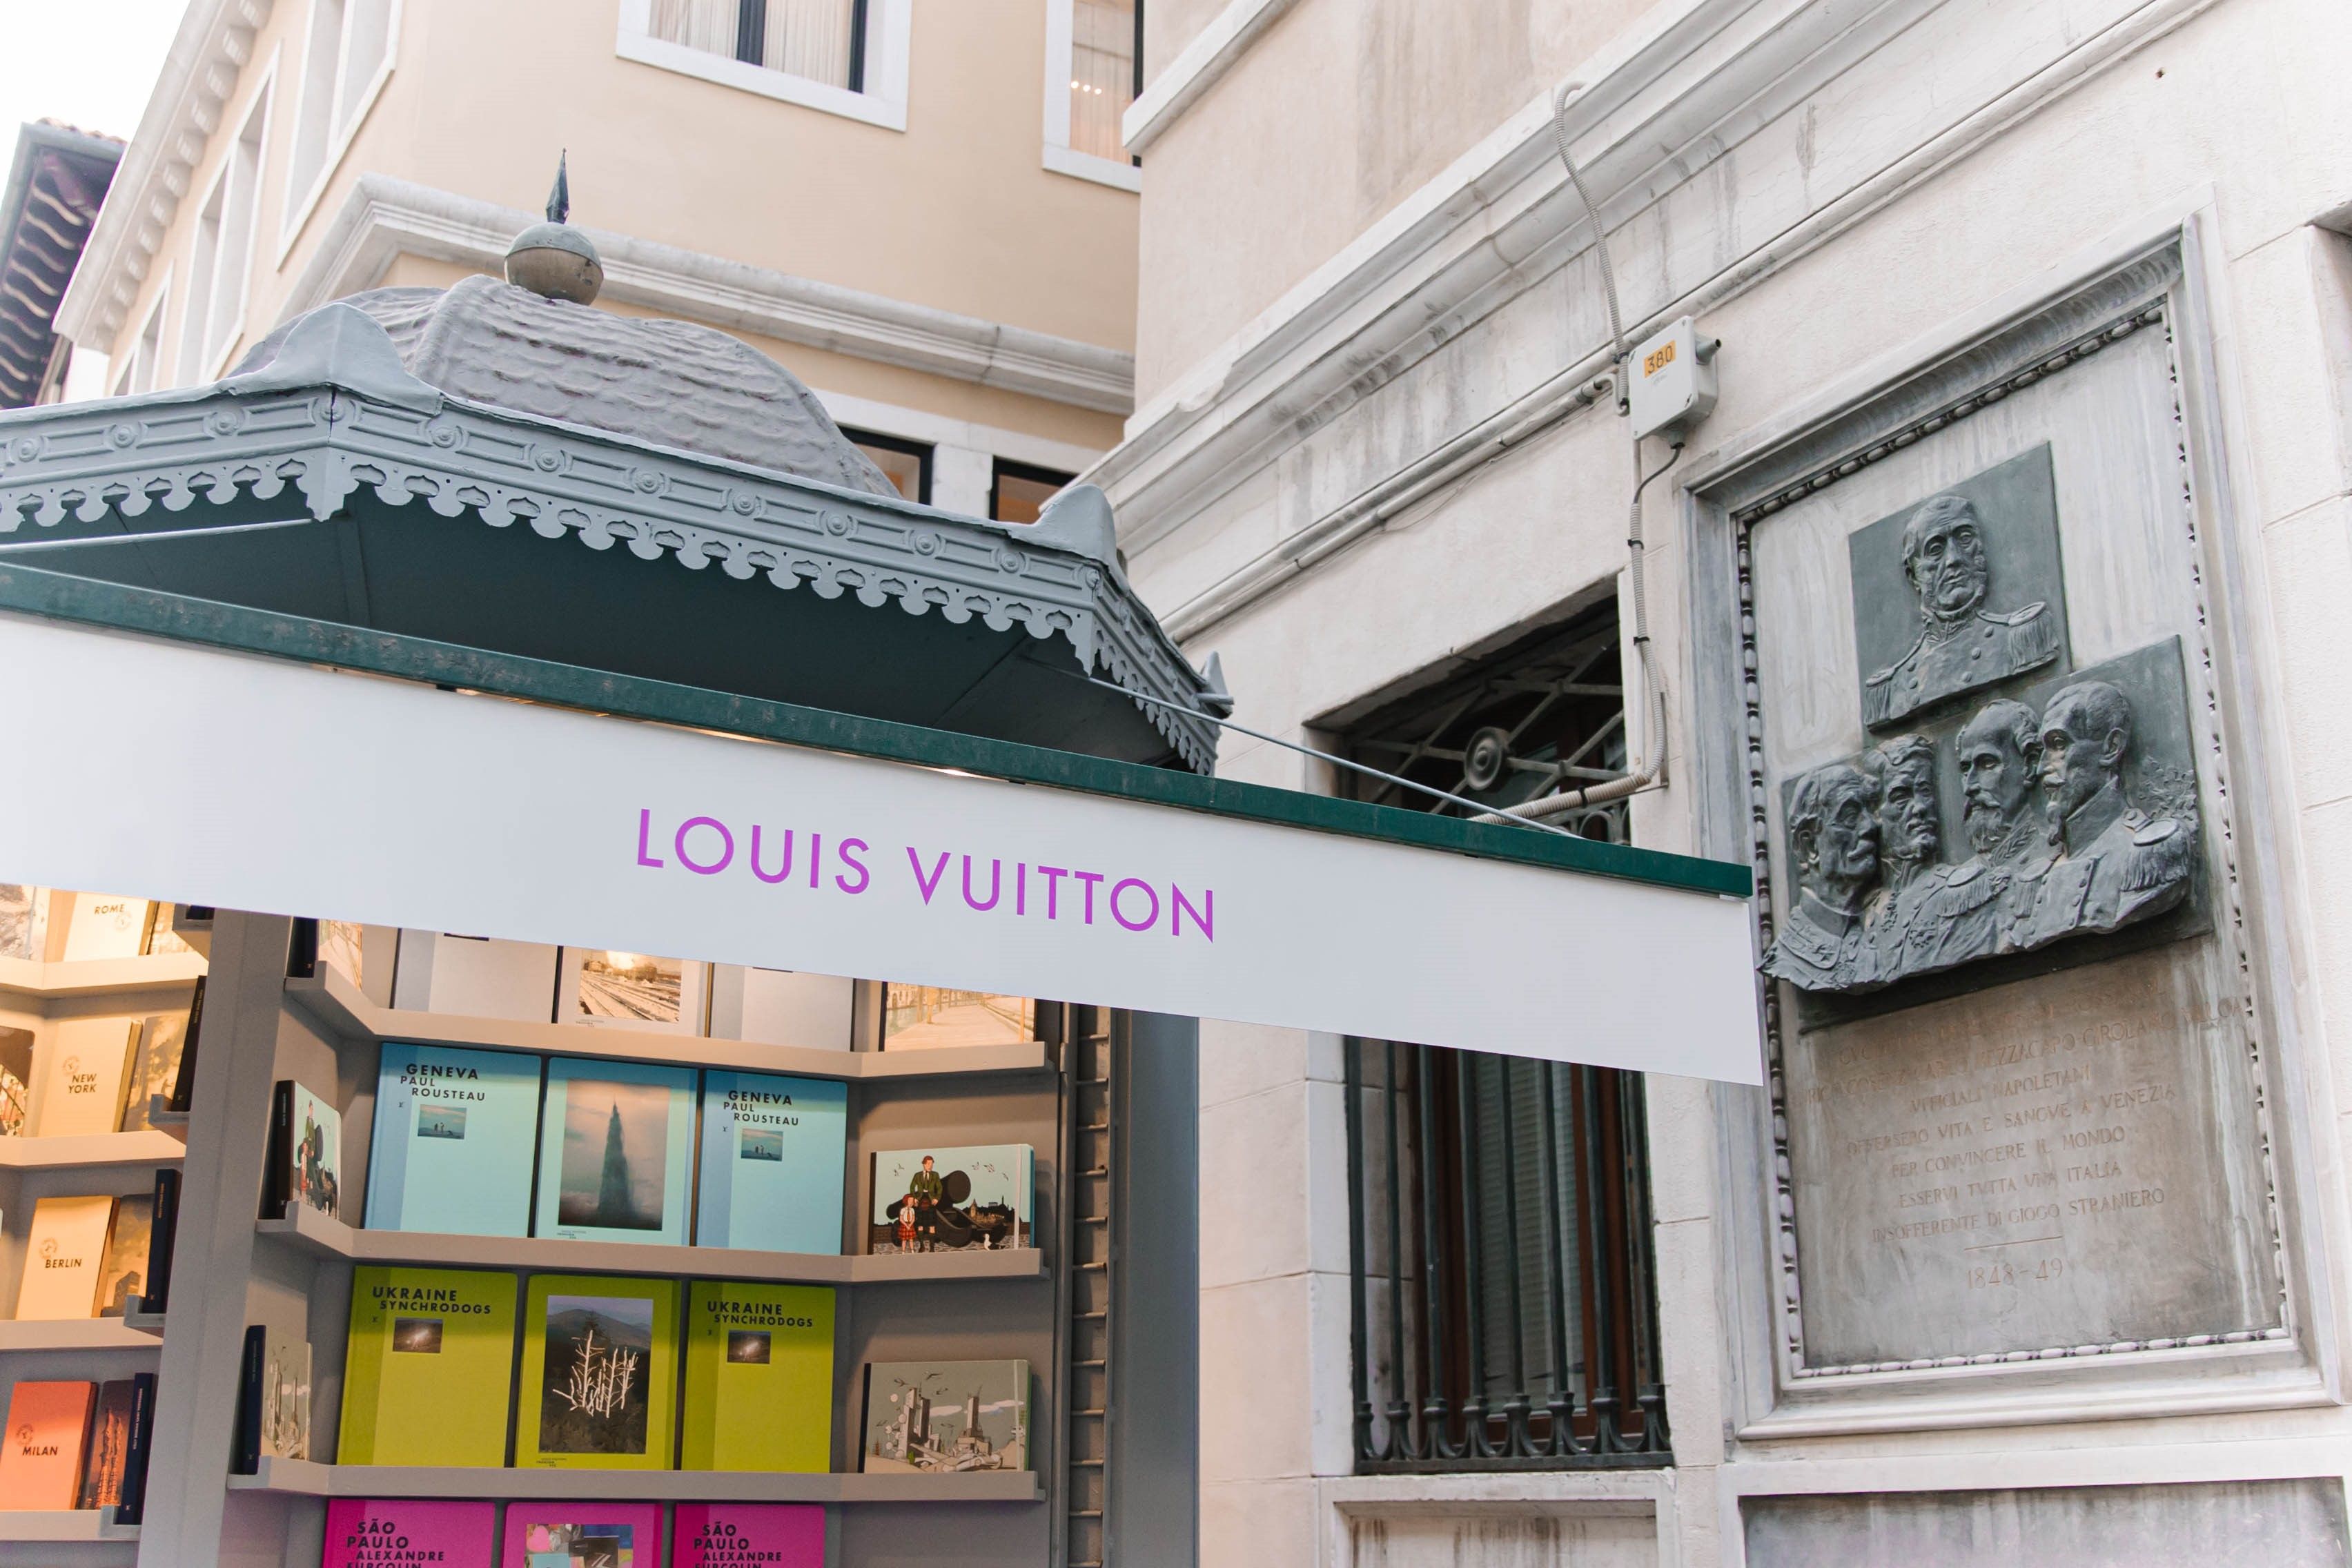 Louis Vuitton, le nuove City Guide e i libri di fotografia